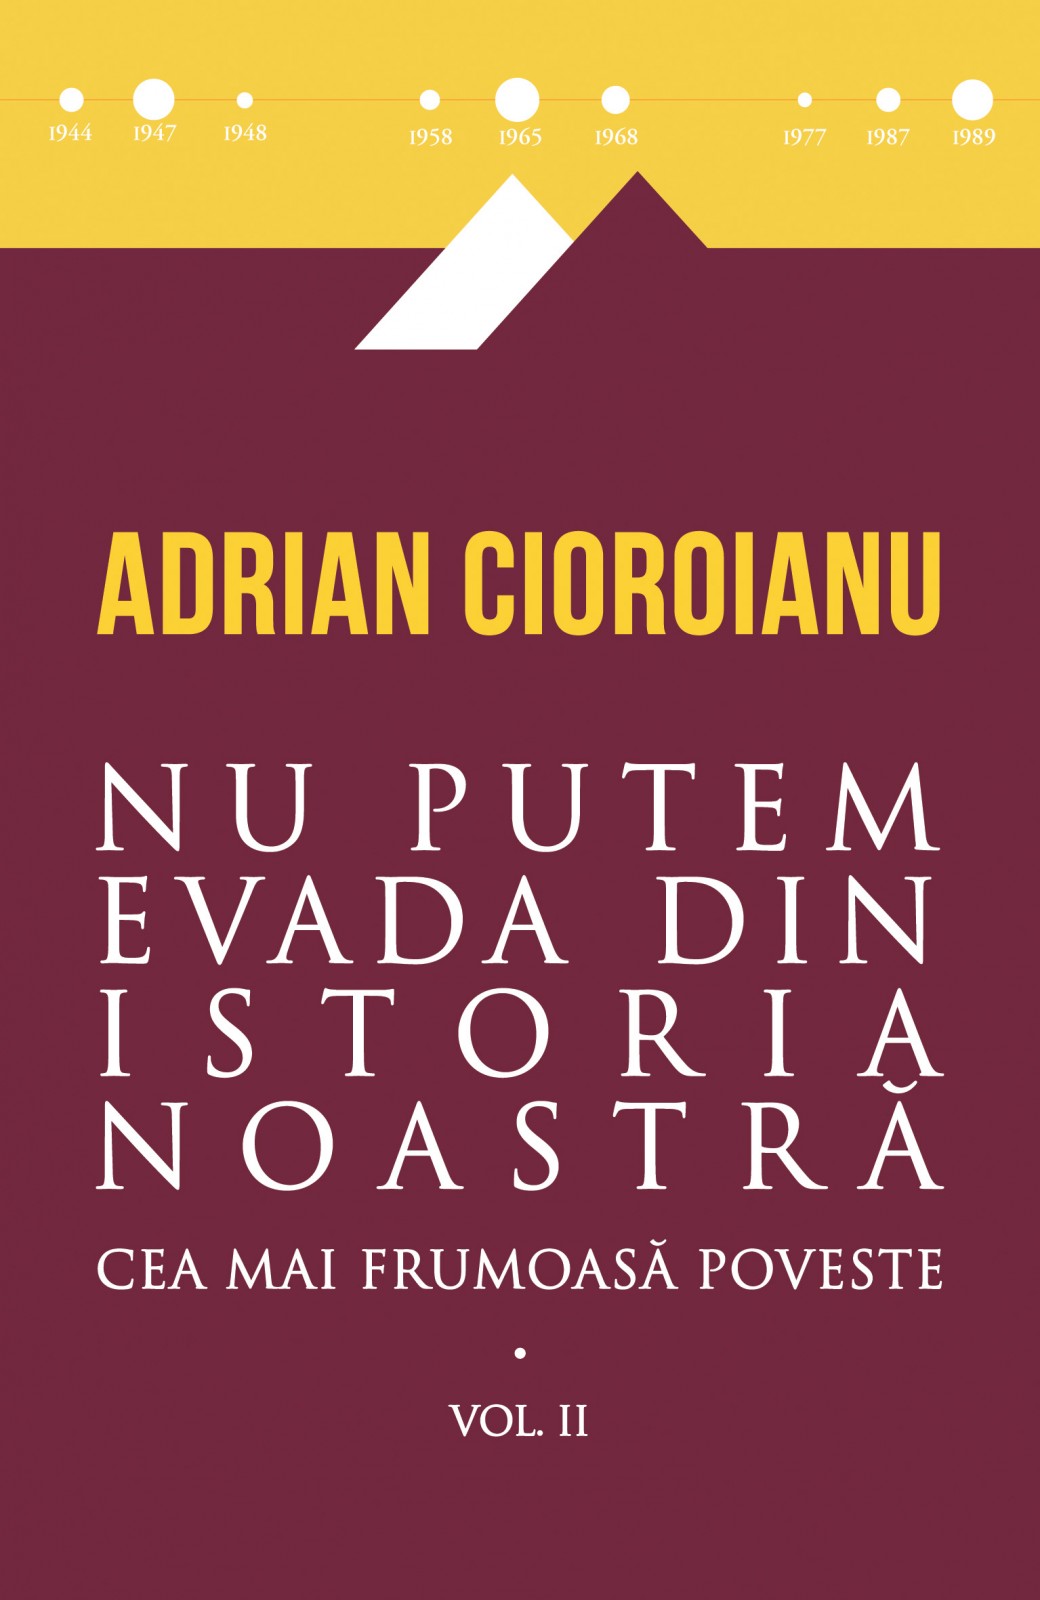 Adrian Cioroianu spune Cea mai frumoasă poveste pe 31 august la Casa Artelor Sector 3